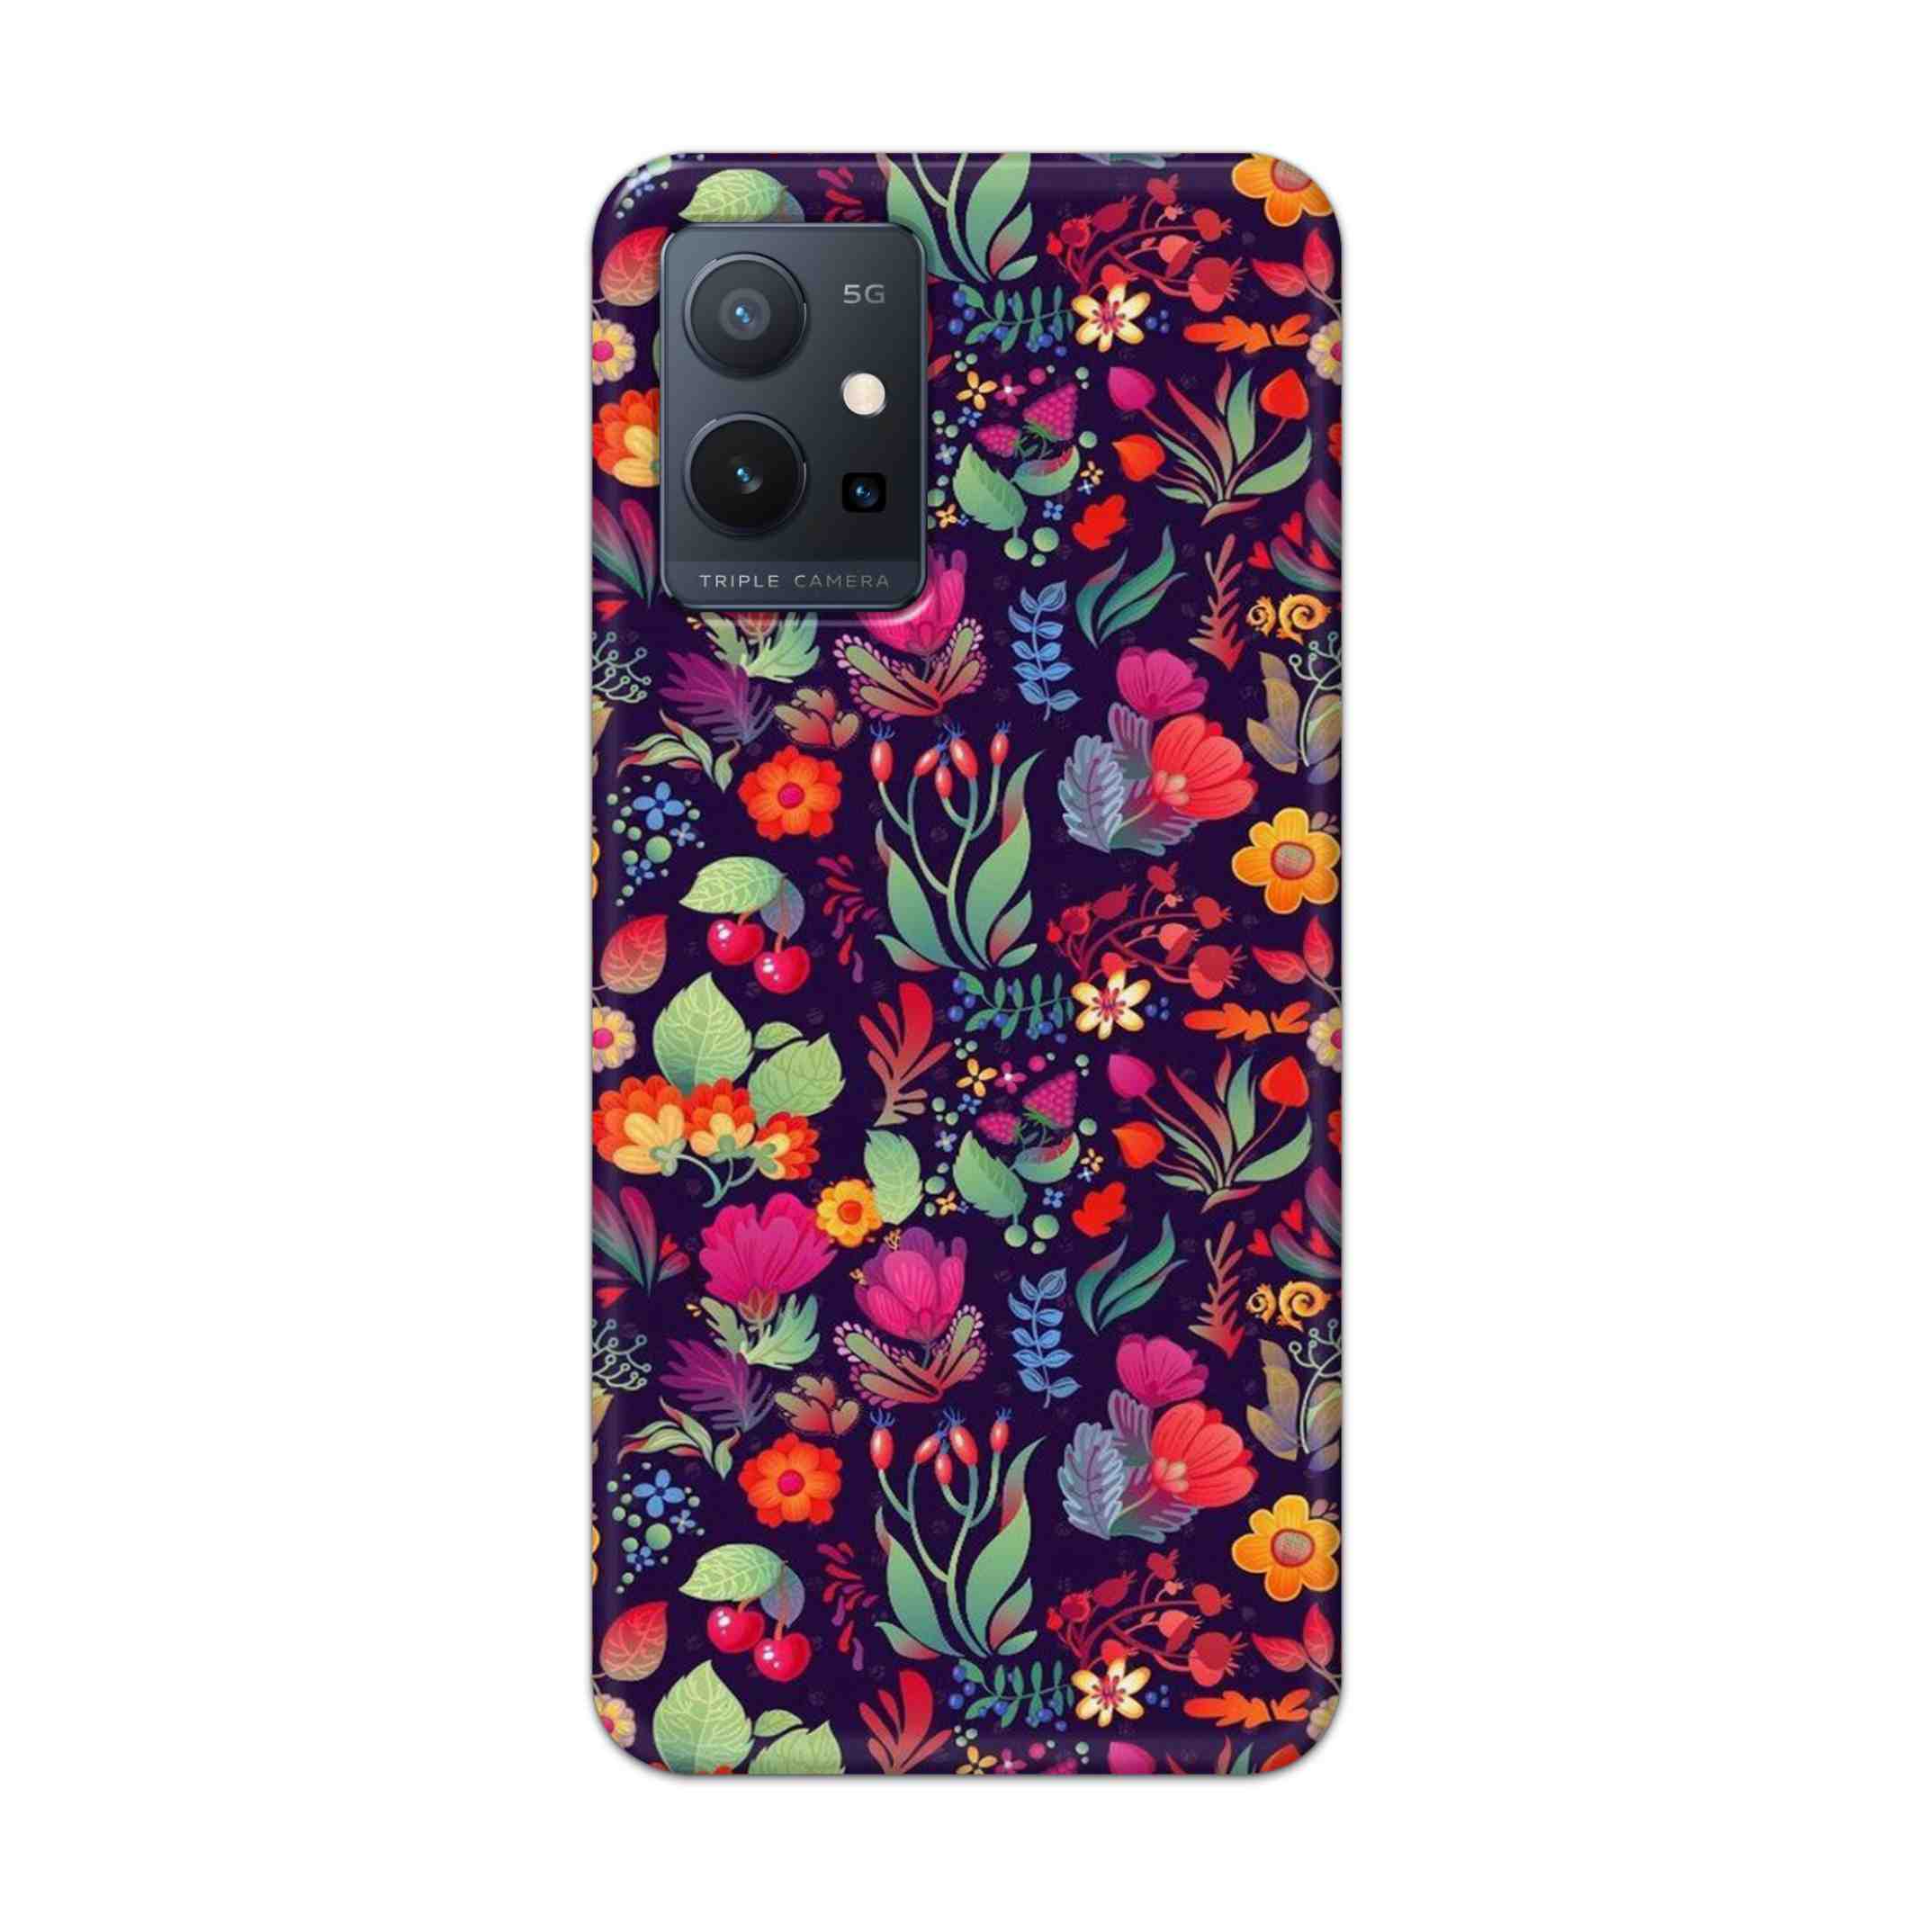 Buy Fruits Flower Hard Back Mobile Phone Case Cover For Vivo T1 5G Online